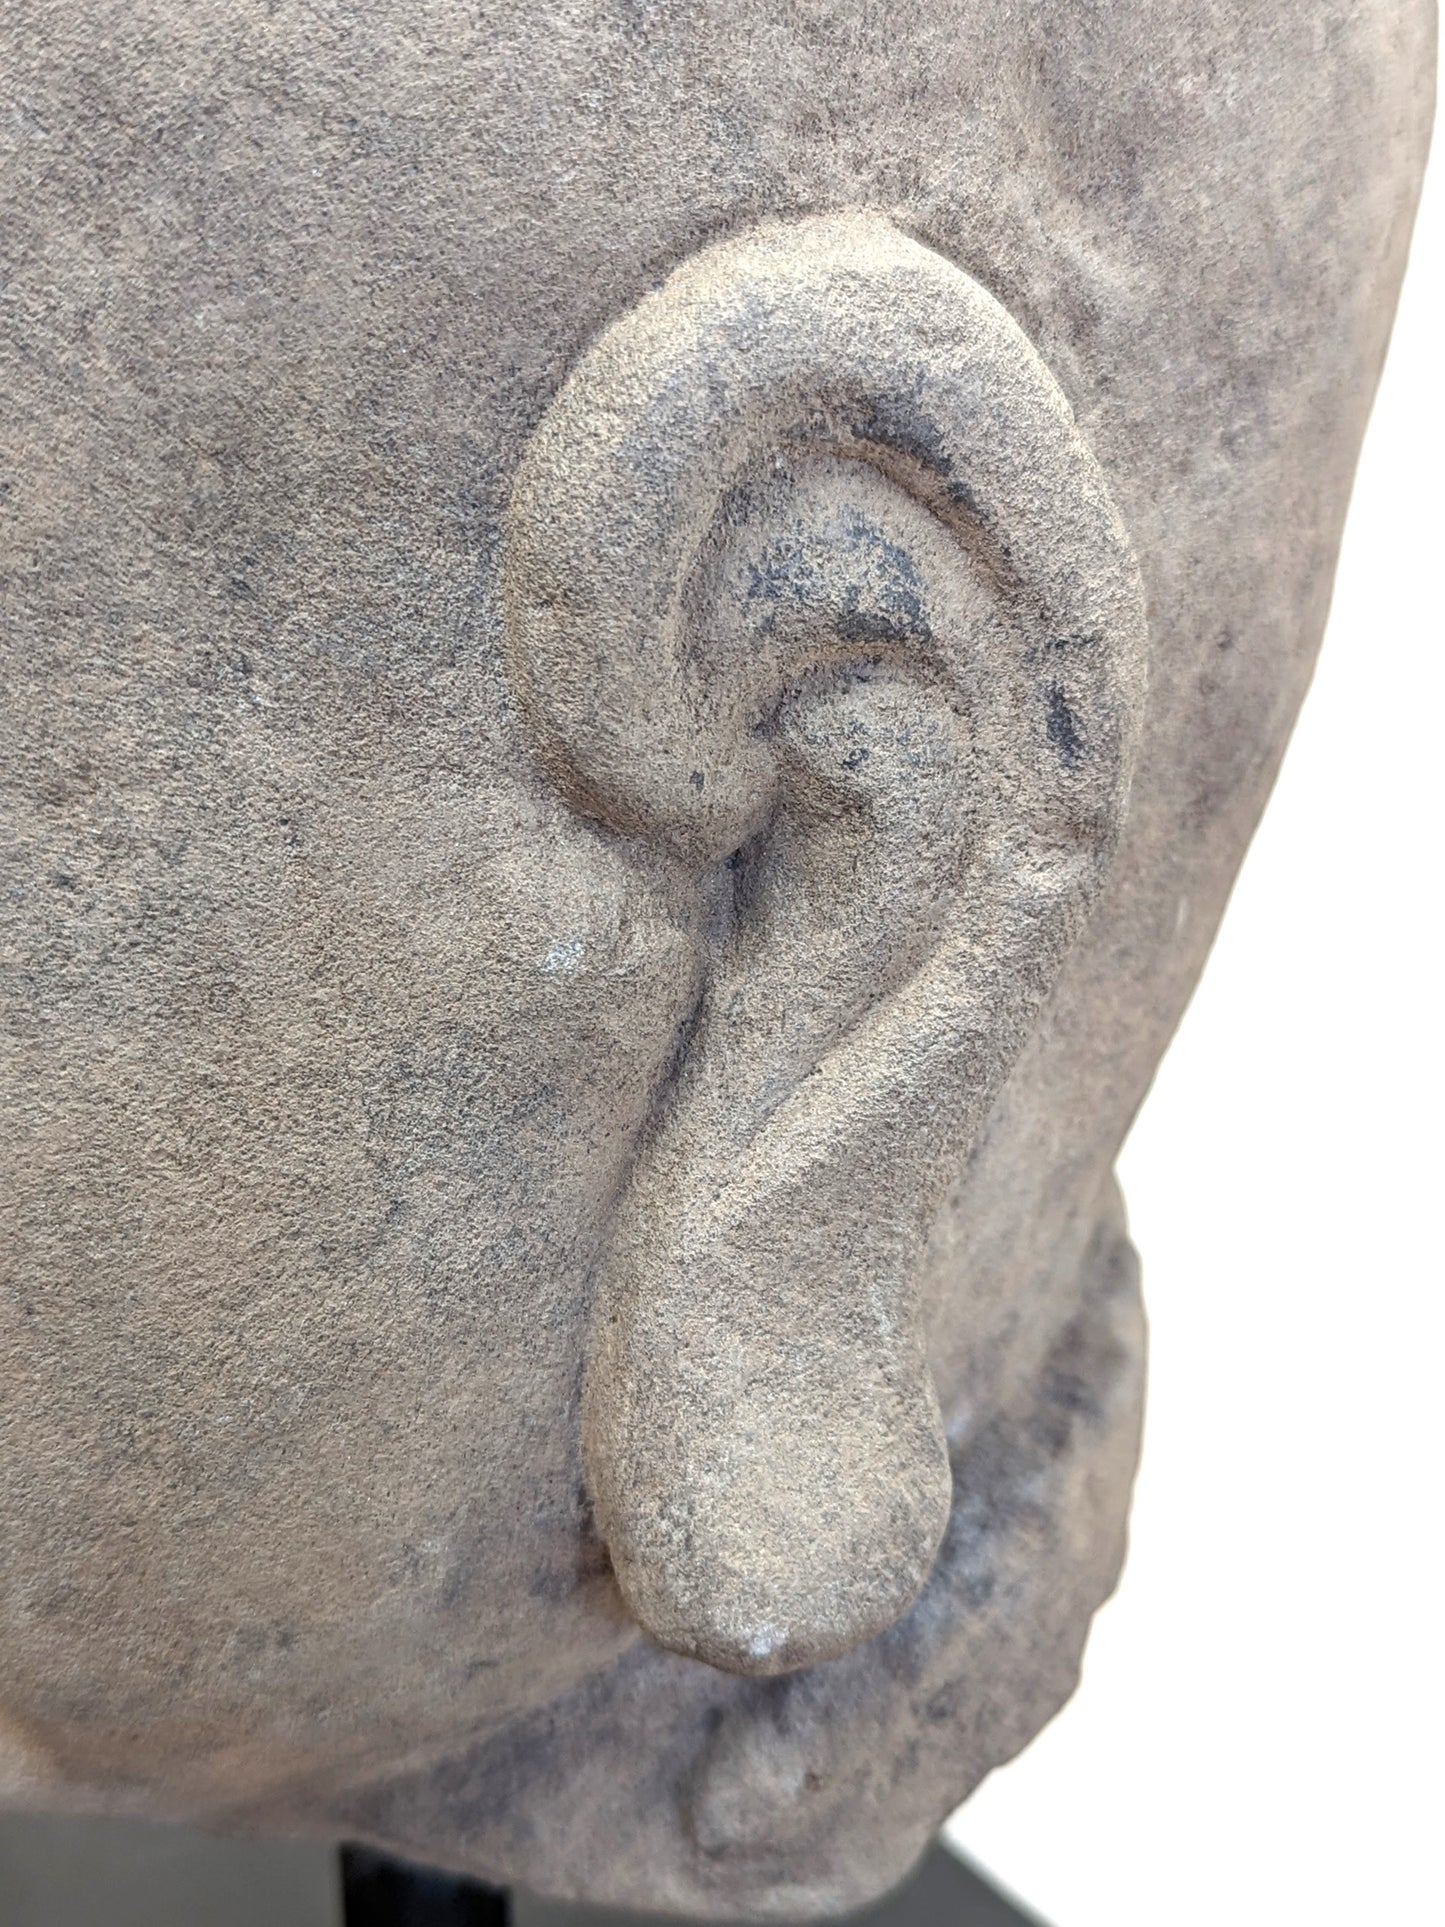 19th Century Buddhist Head Sculpture Sandstone